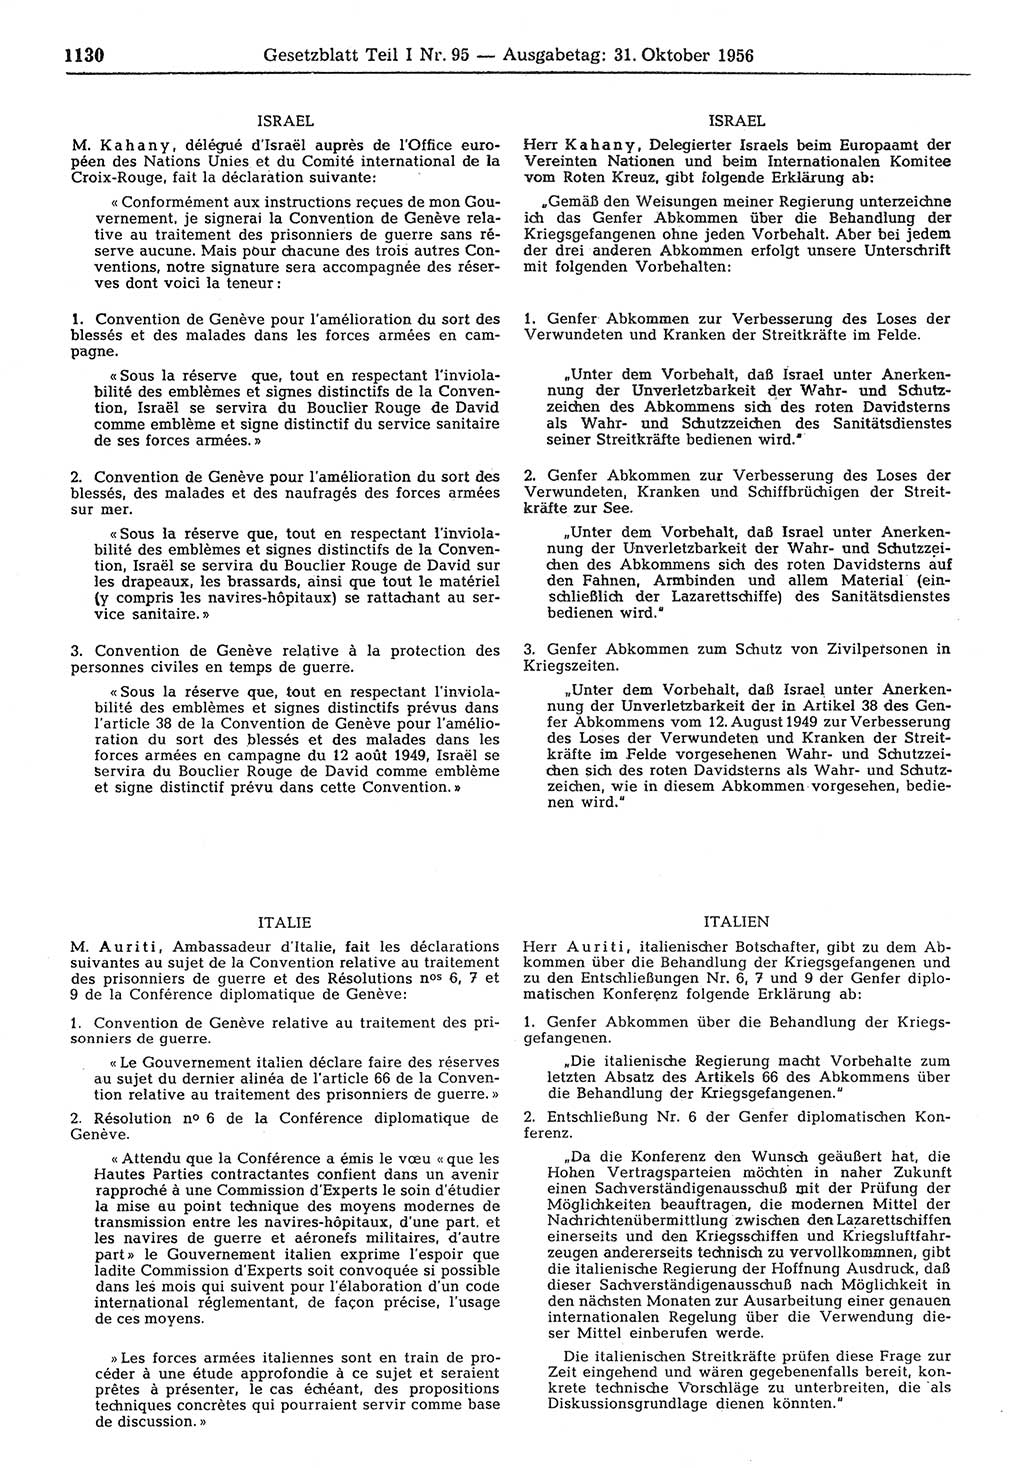 Gesetzblatt (GBl.) der Deutschen Demokratischen Republik (DDR) Teil Ⅰ 1956, Seite 1130 (GBl. DDR Ⅰ 1956, S. 1130)